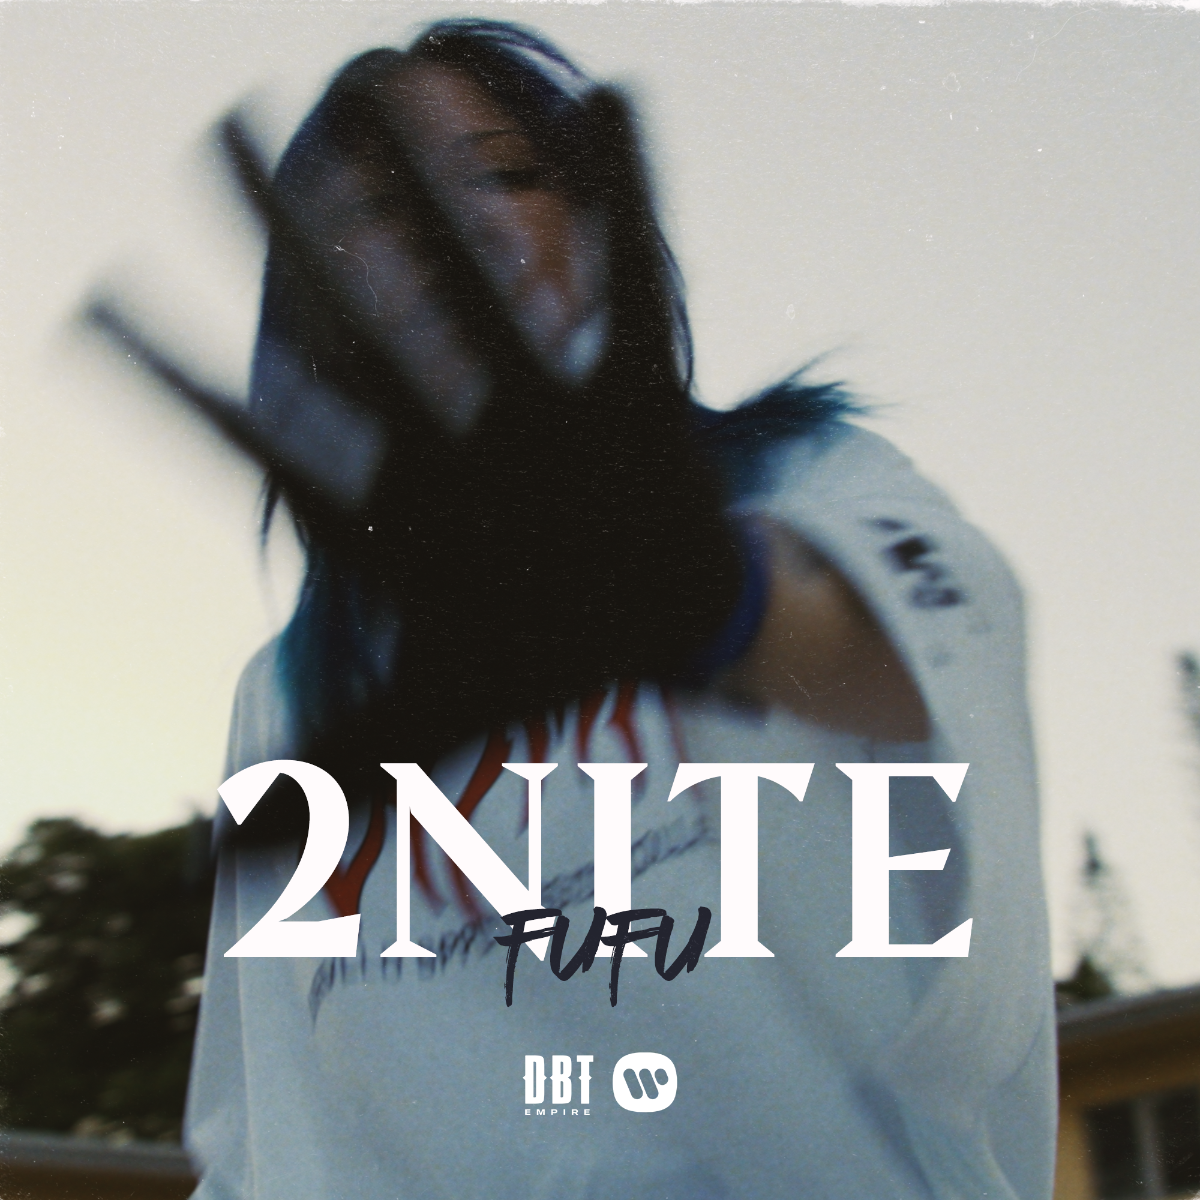 FUFU estrena nuevo sencillo “2NITE”